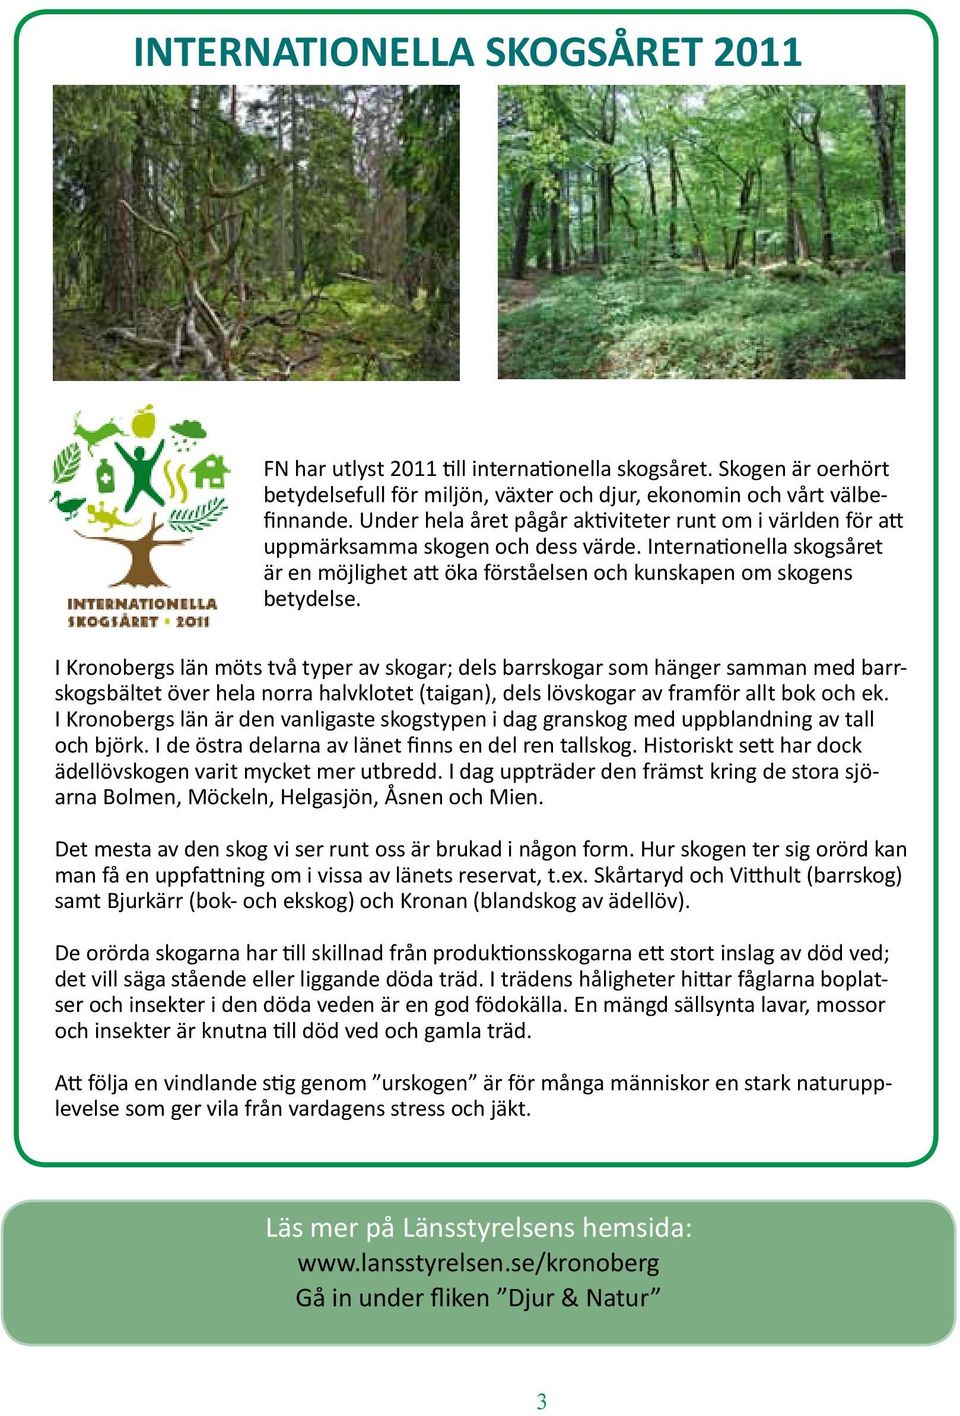 I Kronobergs län möts två typer av skogar; dels barrskogar som hänger samman med barrskogsbältet över hela norra halvklotet (taigan), dels lövskogar av framför allt bok och ek.